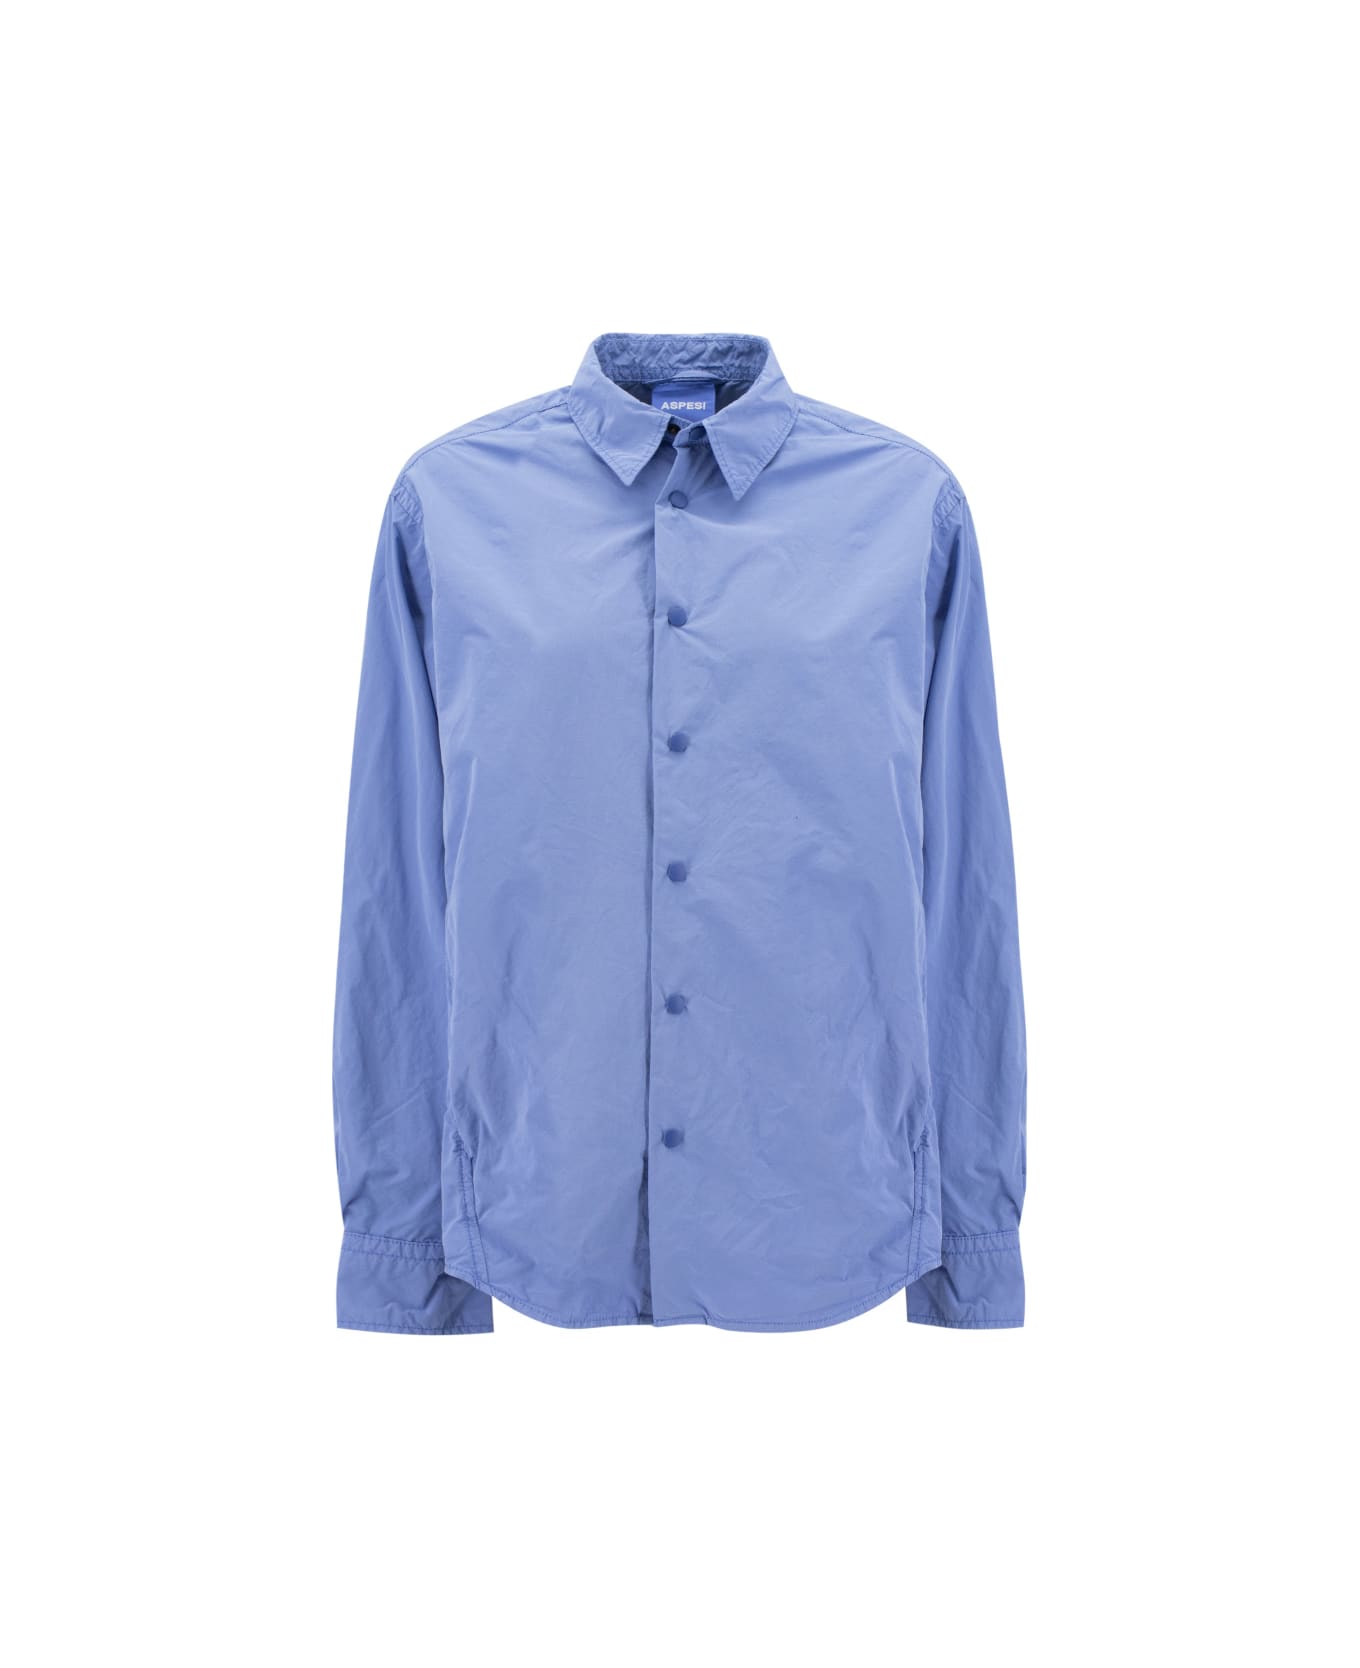 Aspesi Cassell Shirt Jacket - LIGHT BLUE